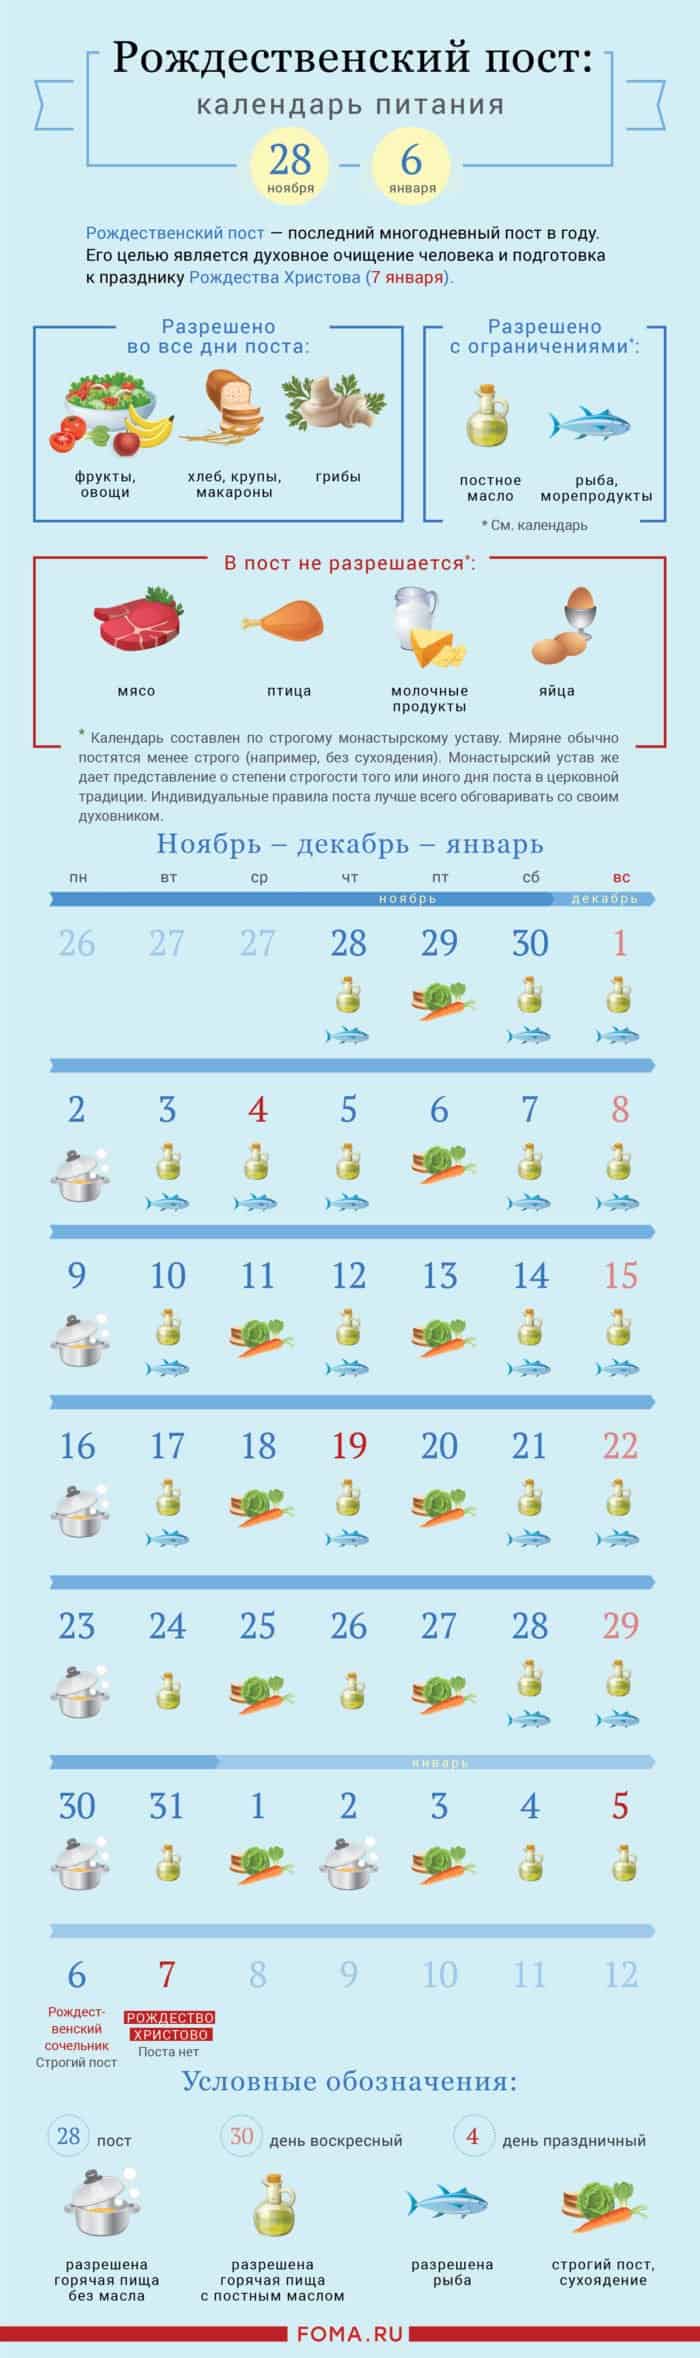 КАЛЕНДАРЬ РОЖДЕСТВЕНСКОГО ПОСТА. Календарь питания Рождественского поста